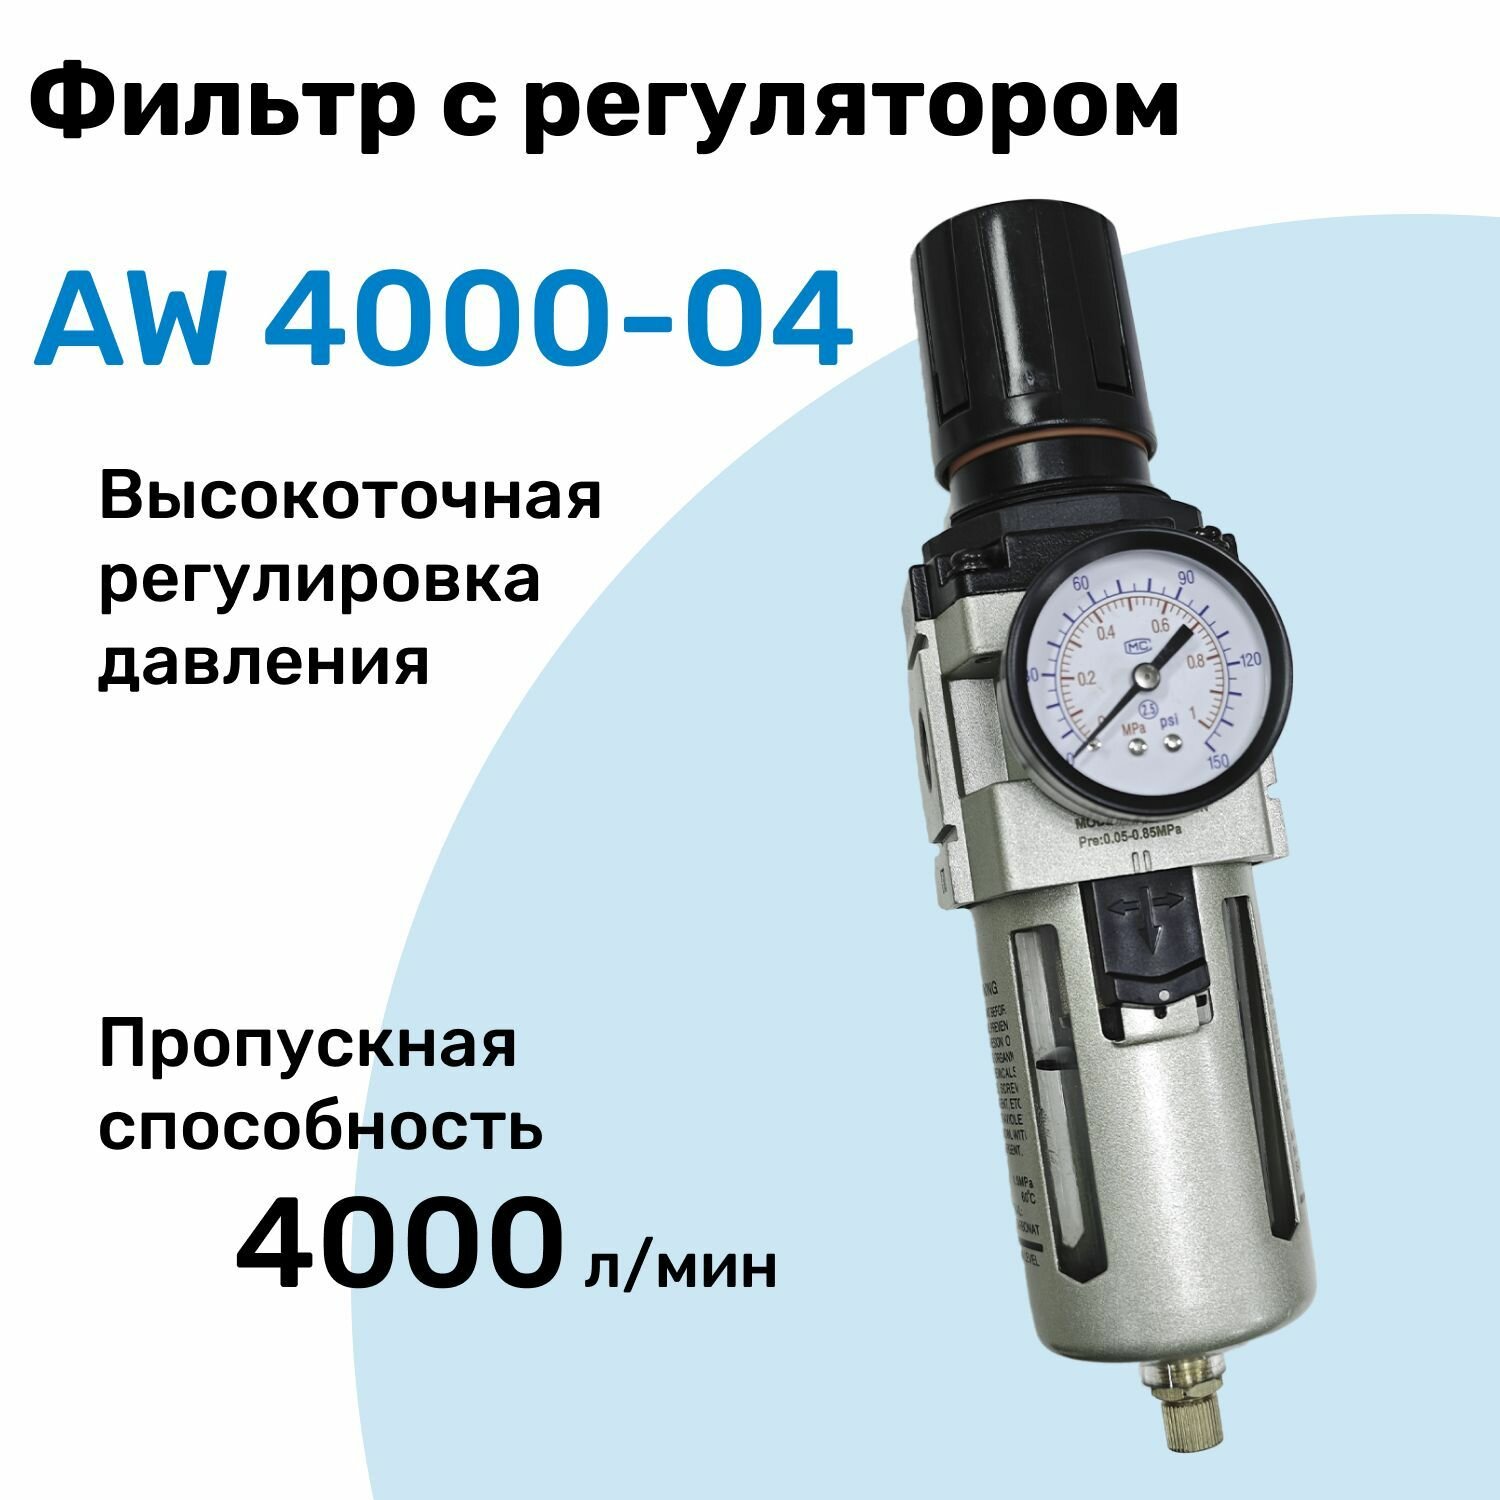 Фильтр с регулятором AW 4000-04 R1/2" Очистка 25мкм Съемный манометр Профессиональный Блок подготовки воздуха NBPT